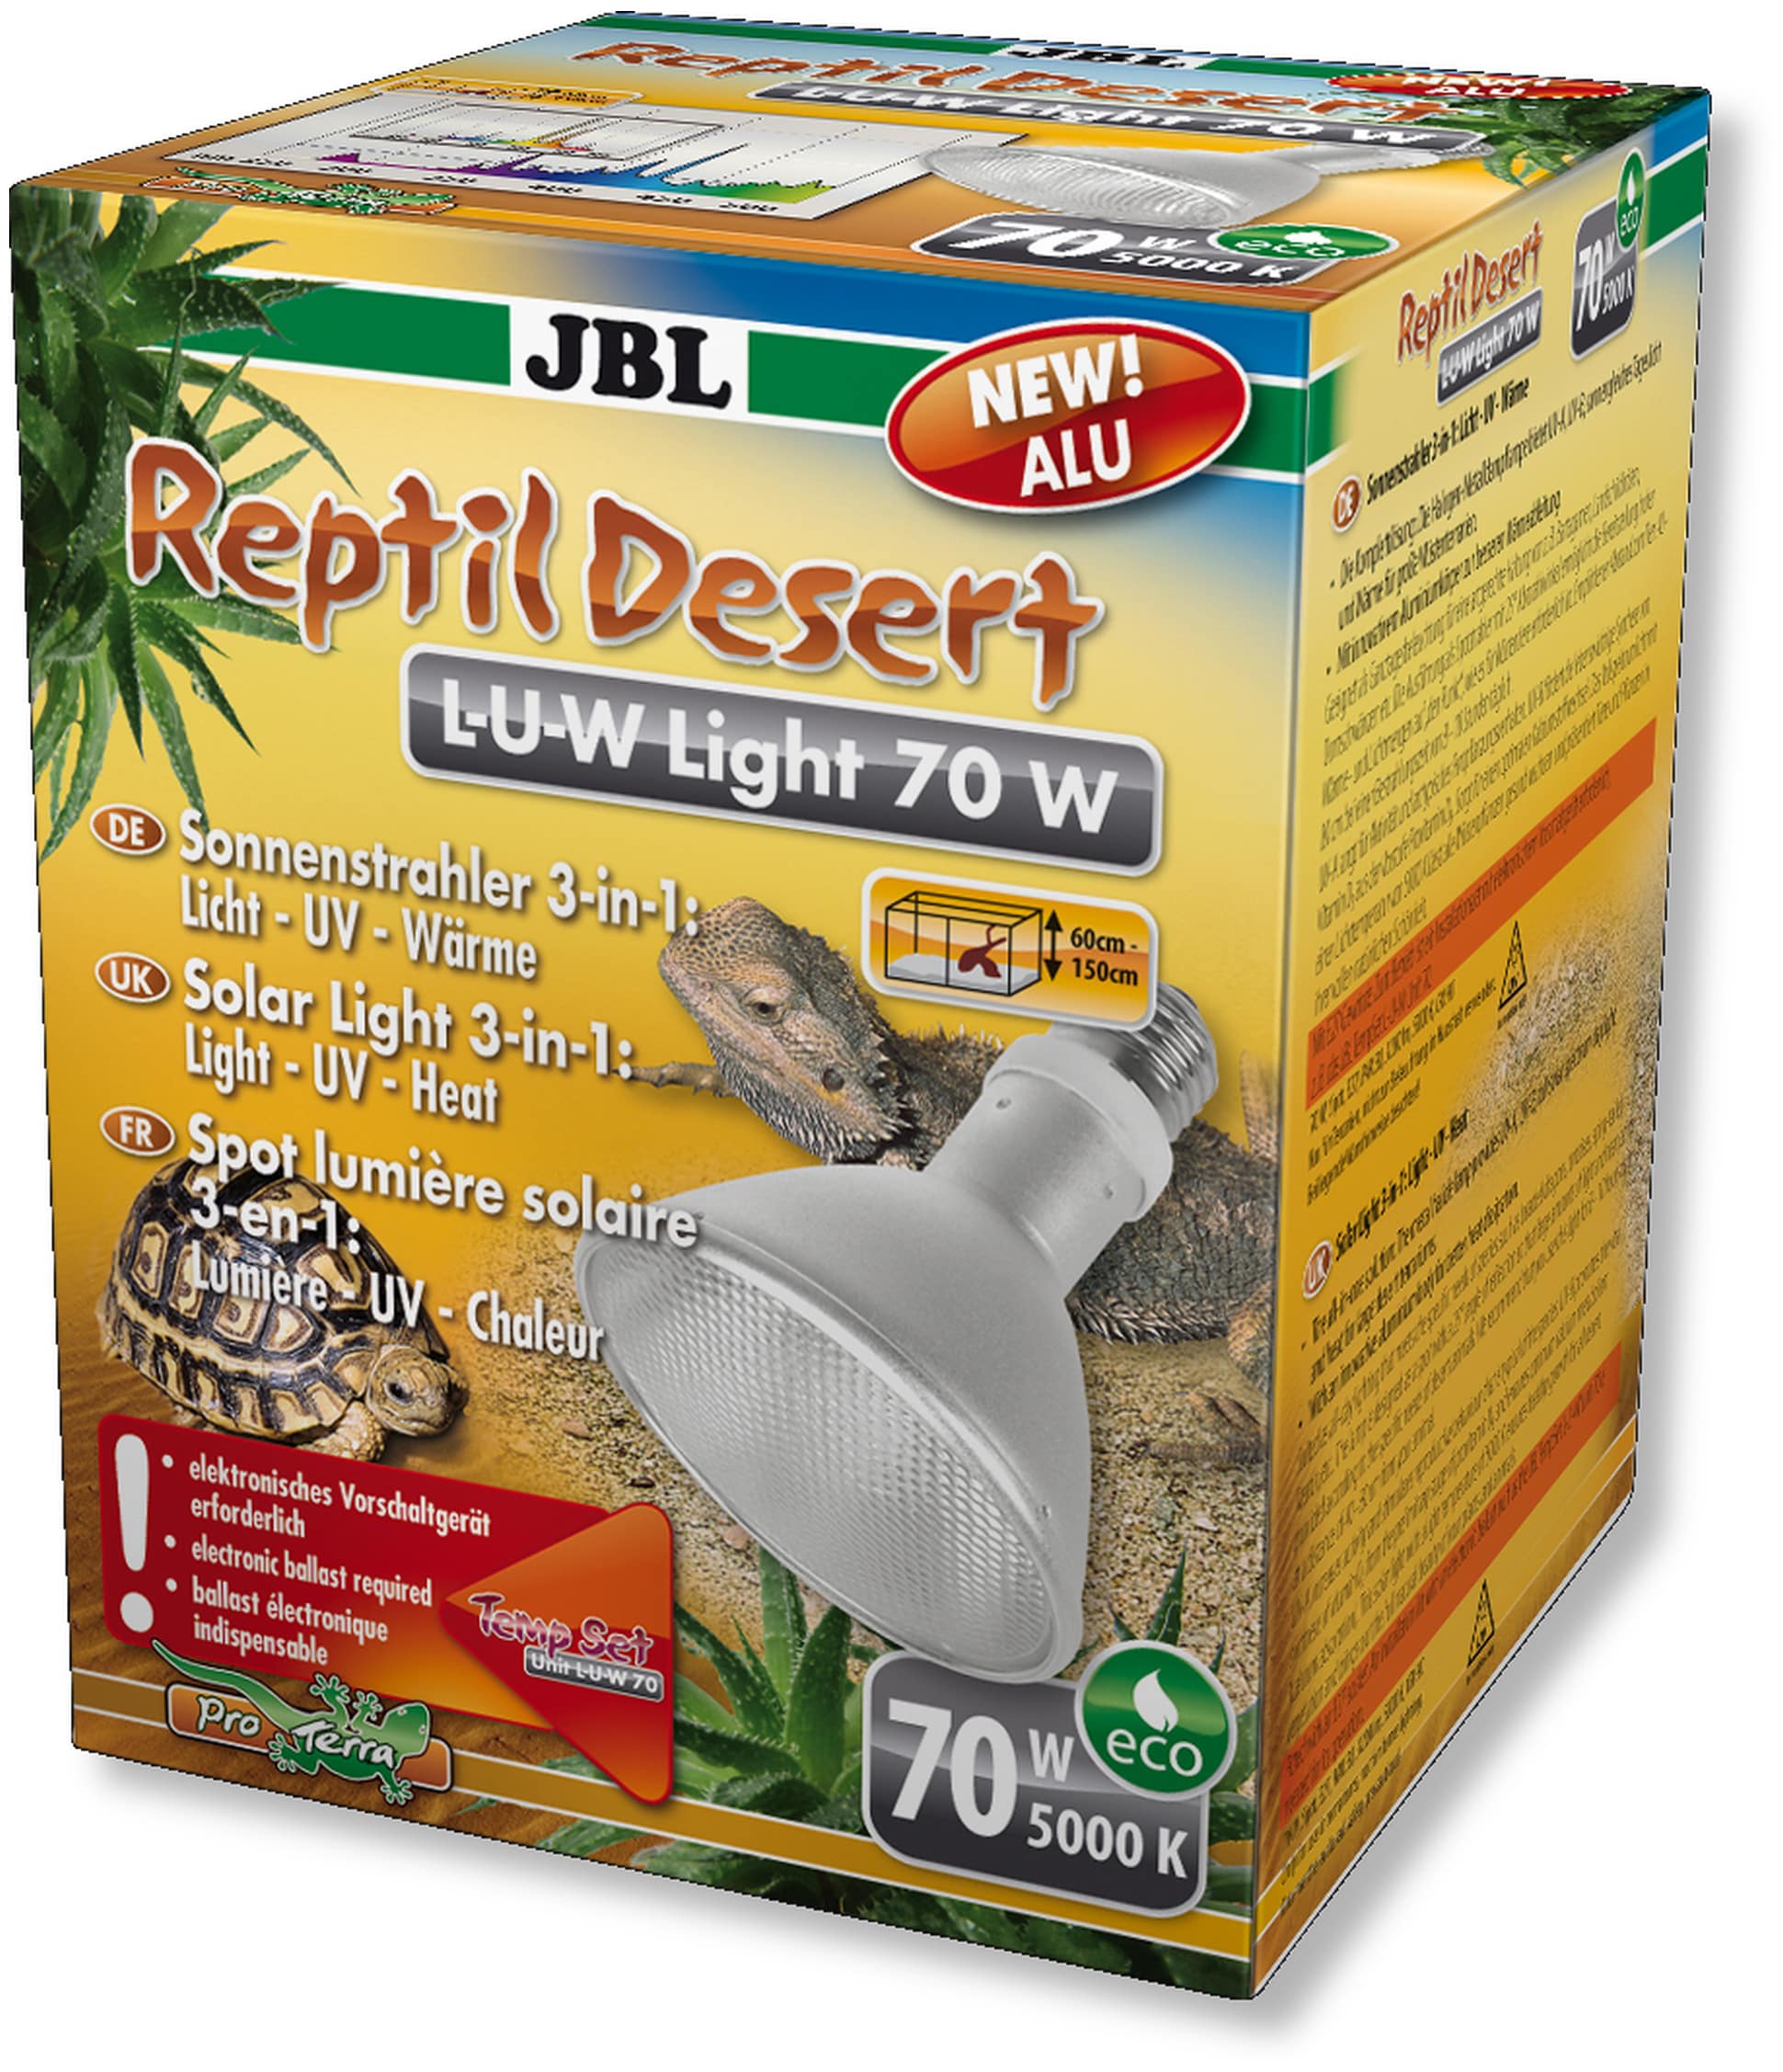 JBL ReptilDesert L-U-W Light alu 70W spot HQI en aluminium pour la reproduction du soleil en terrarium de type désertique